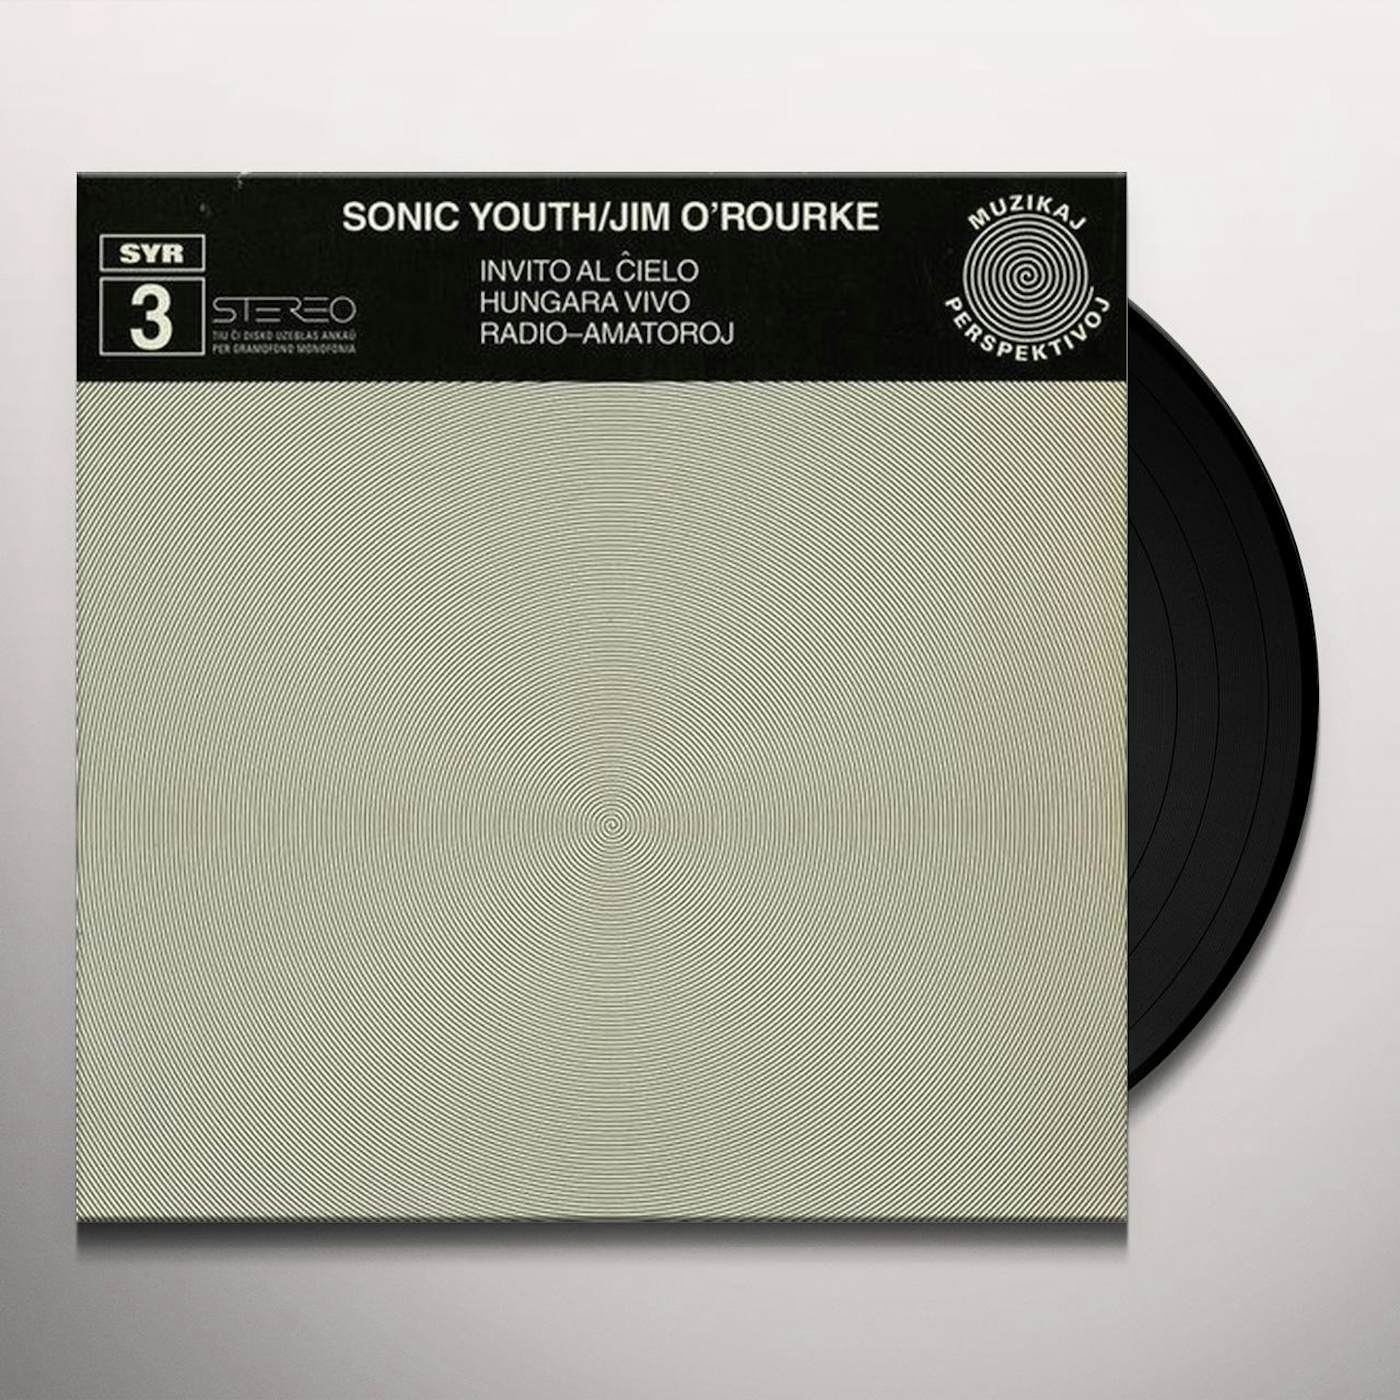 Jim Sonic Youth / O'Rourke INVITO AL CIELO Vinyl Record